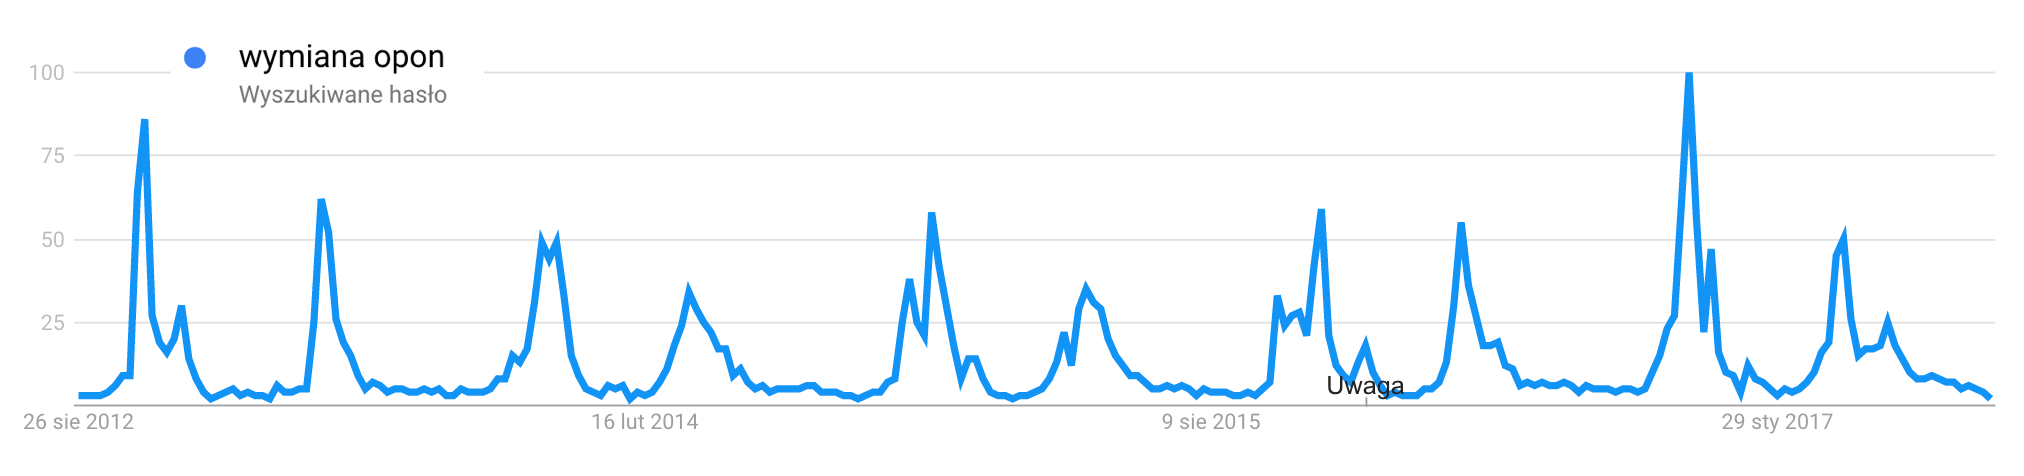 Google Trends - Wymiana Opon